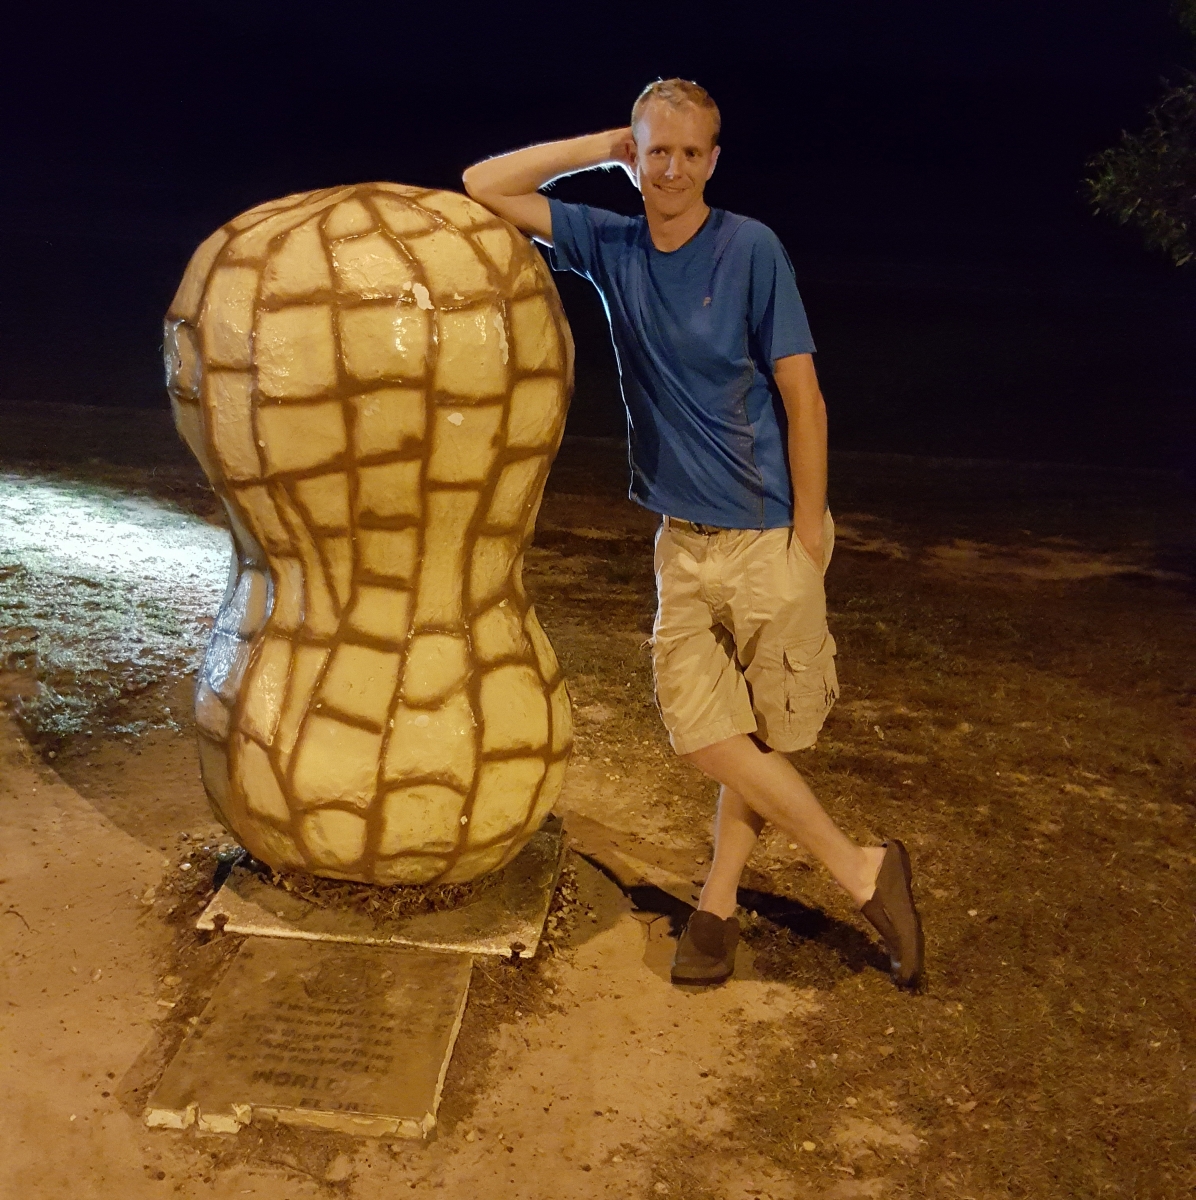 Man leans against large peanut statue